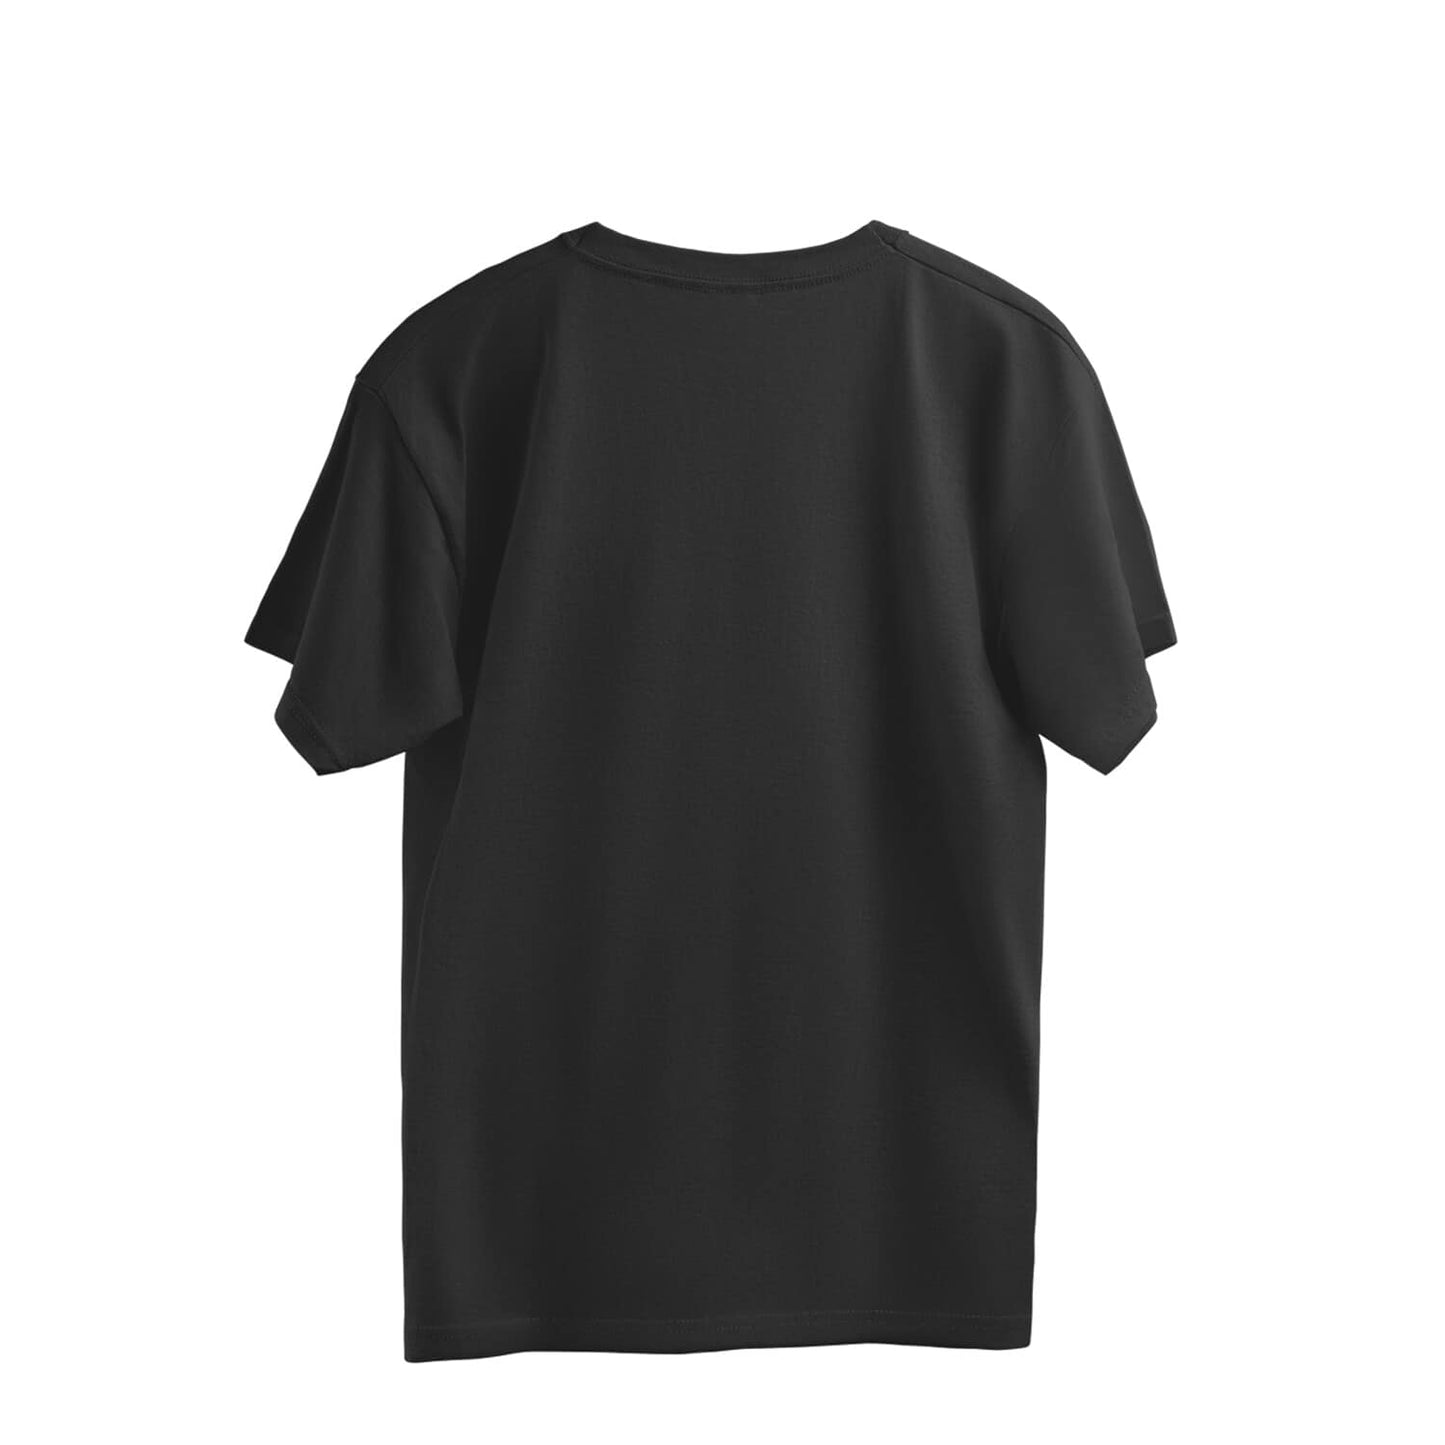 Trenfort Beard Community Oversized T-shirt for Men